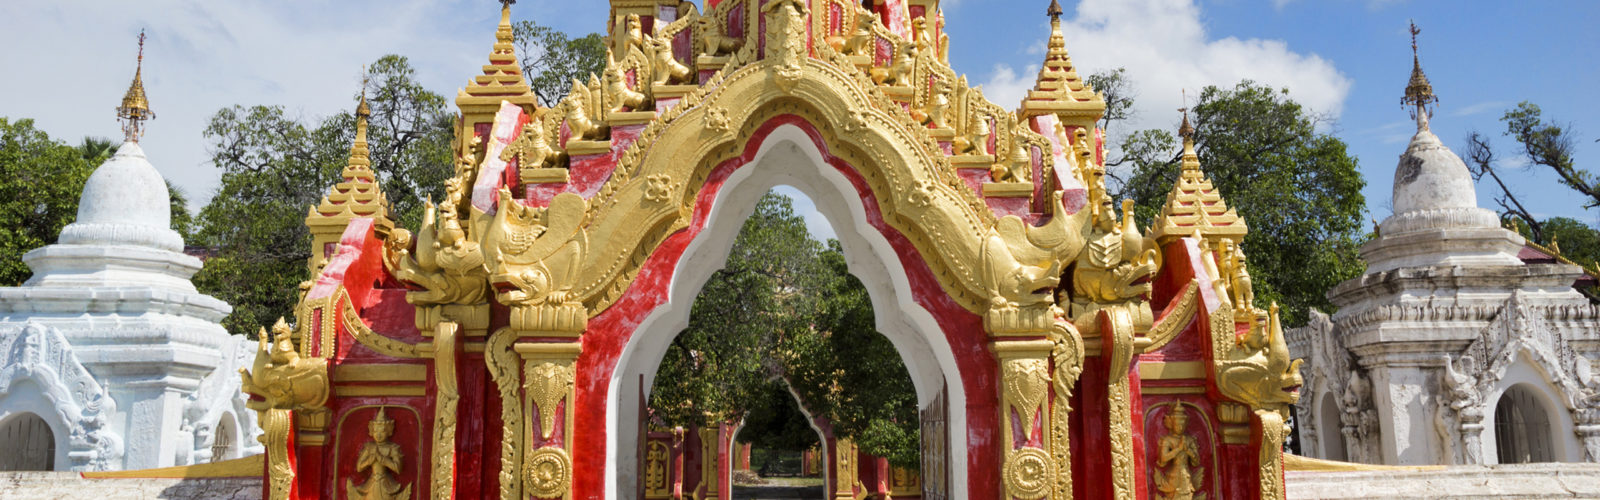 kuthodaw-pagoda-mandalay-gate